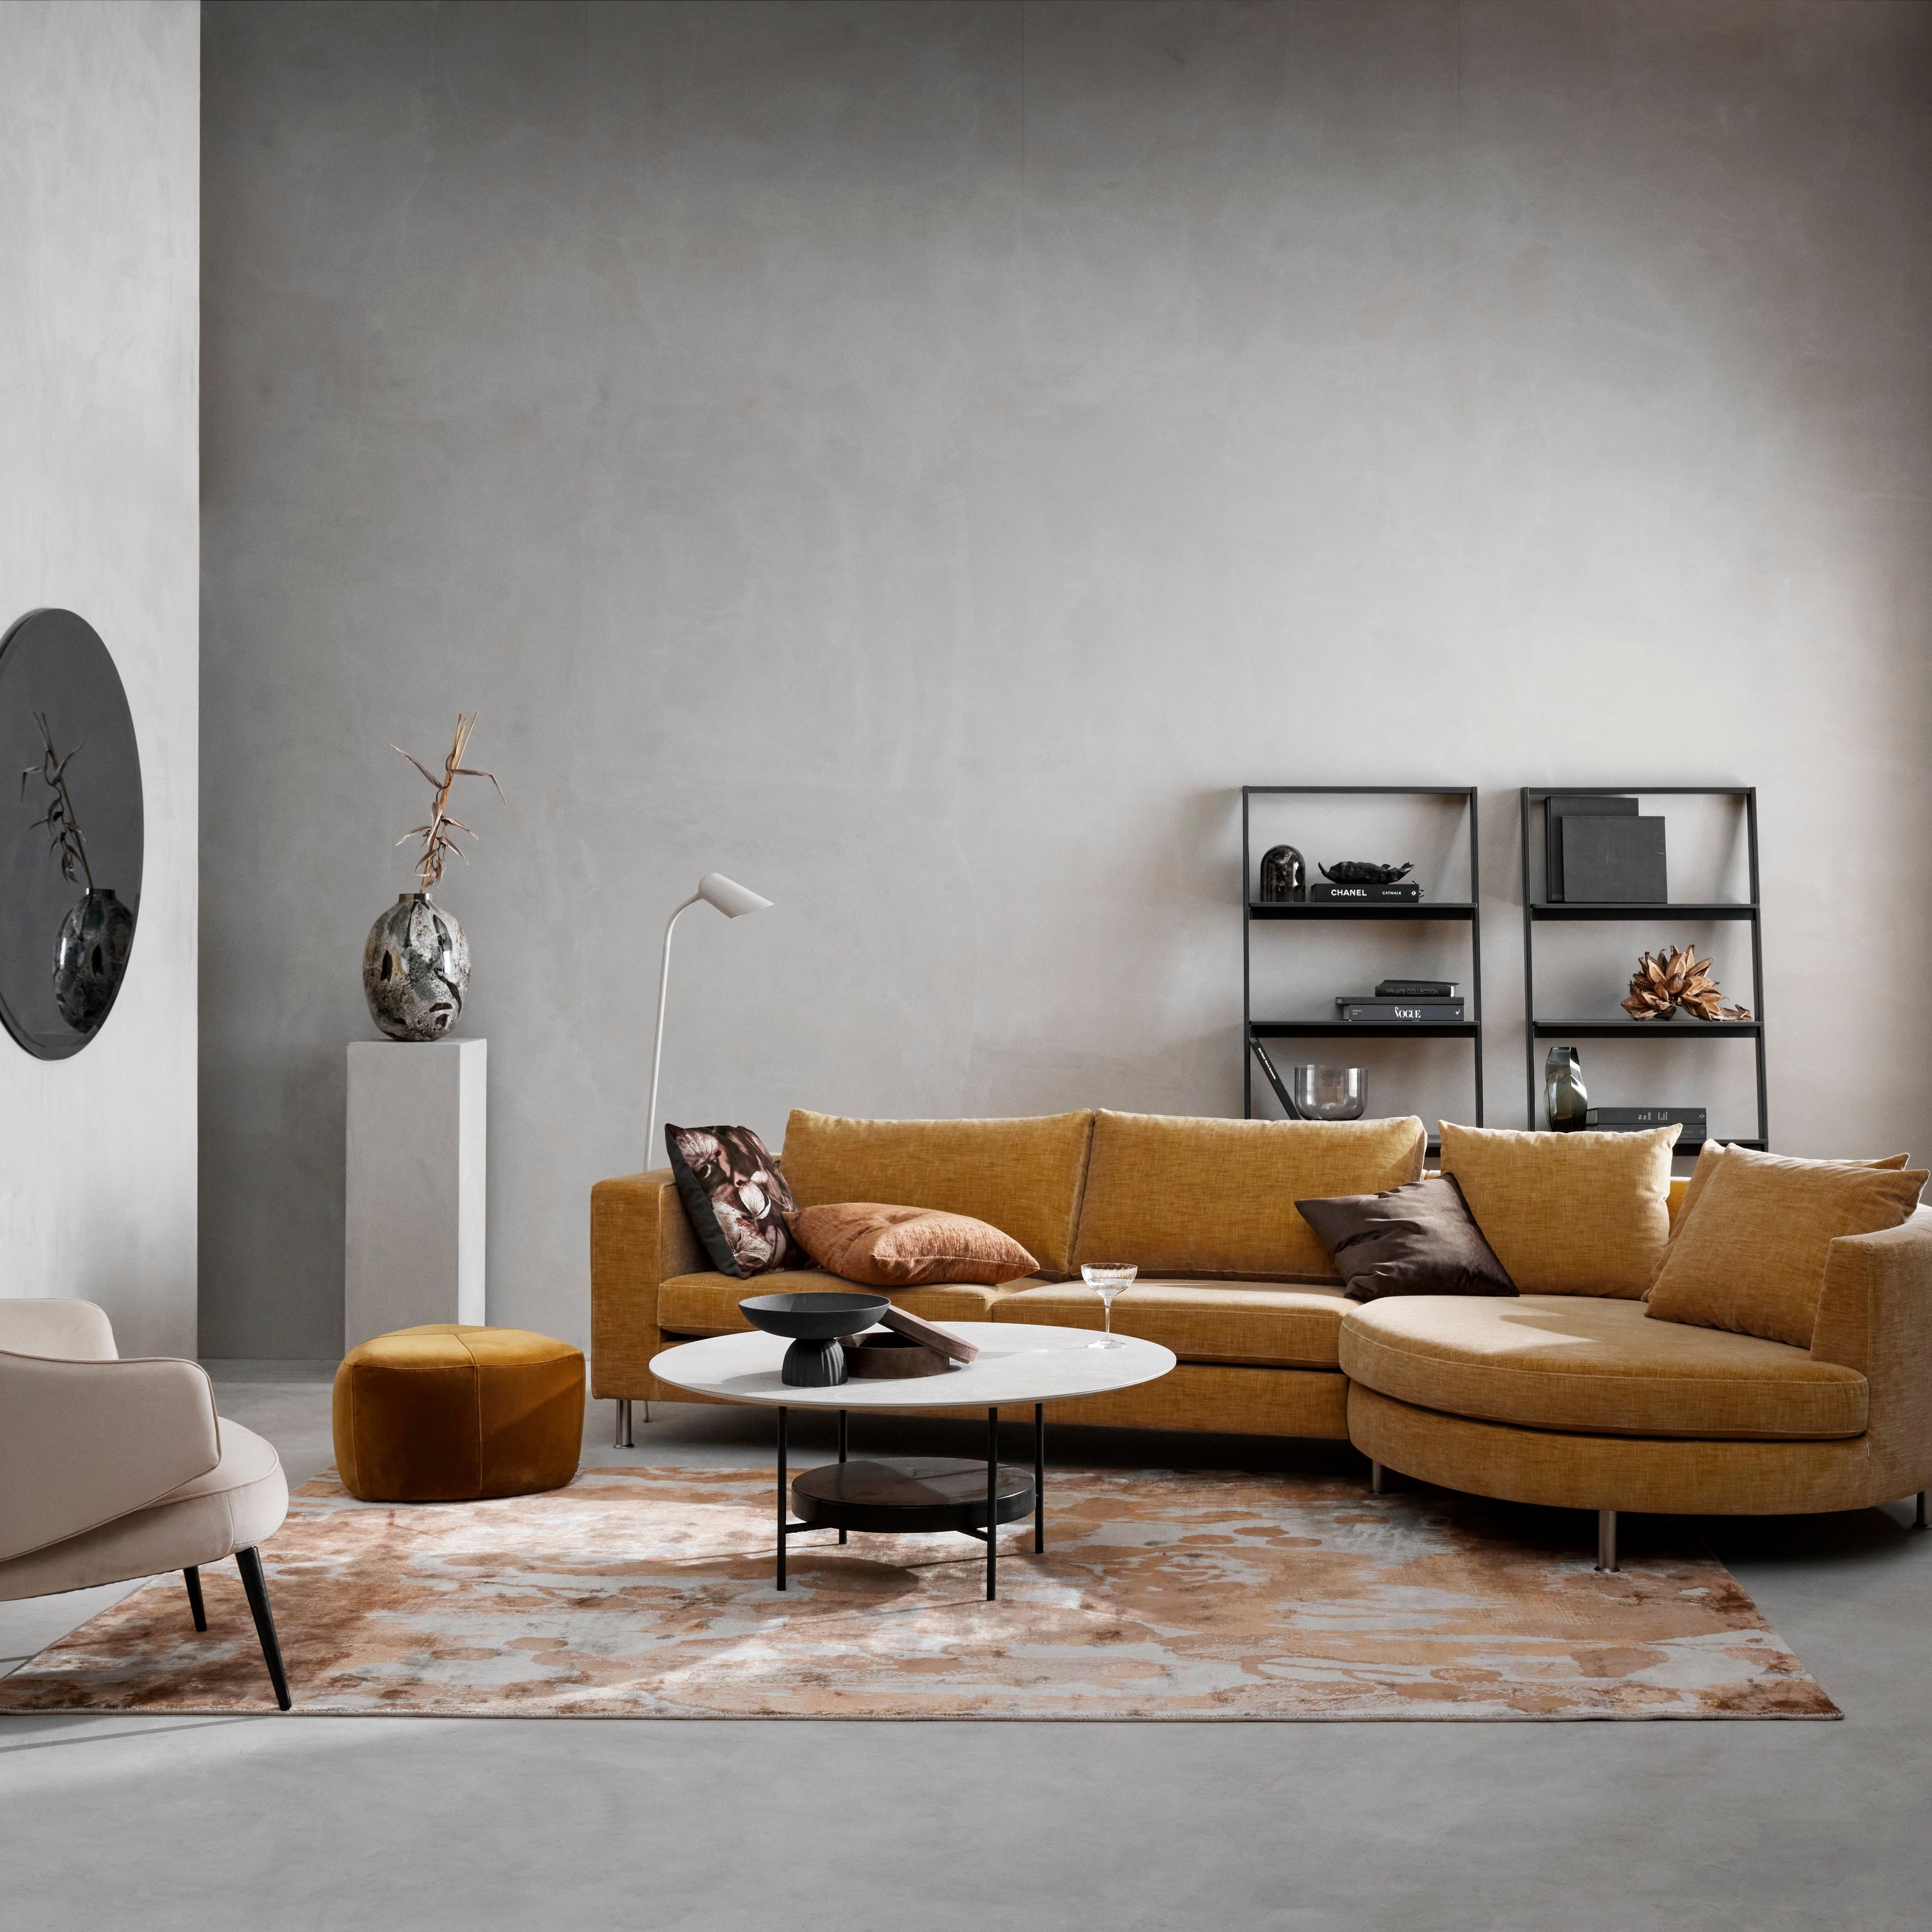 Modernt vardagsrum med senapsfärgad modulsoffa, beige stol, mönstrad matta och minimalistisk inredning.